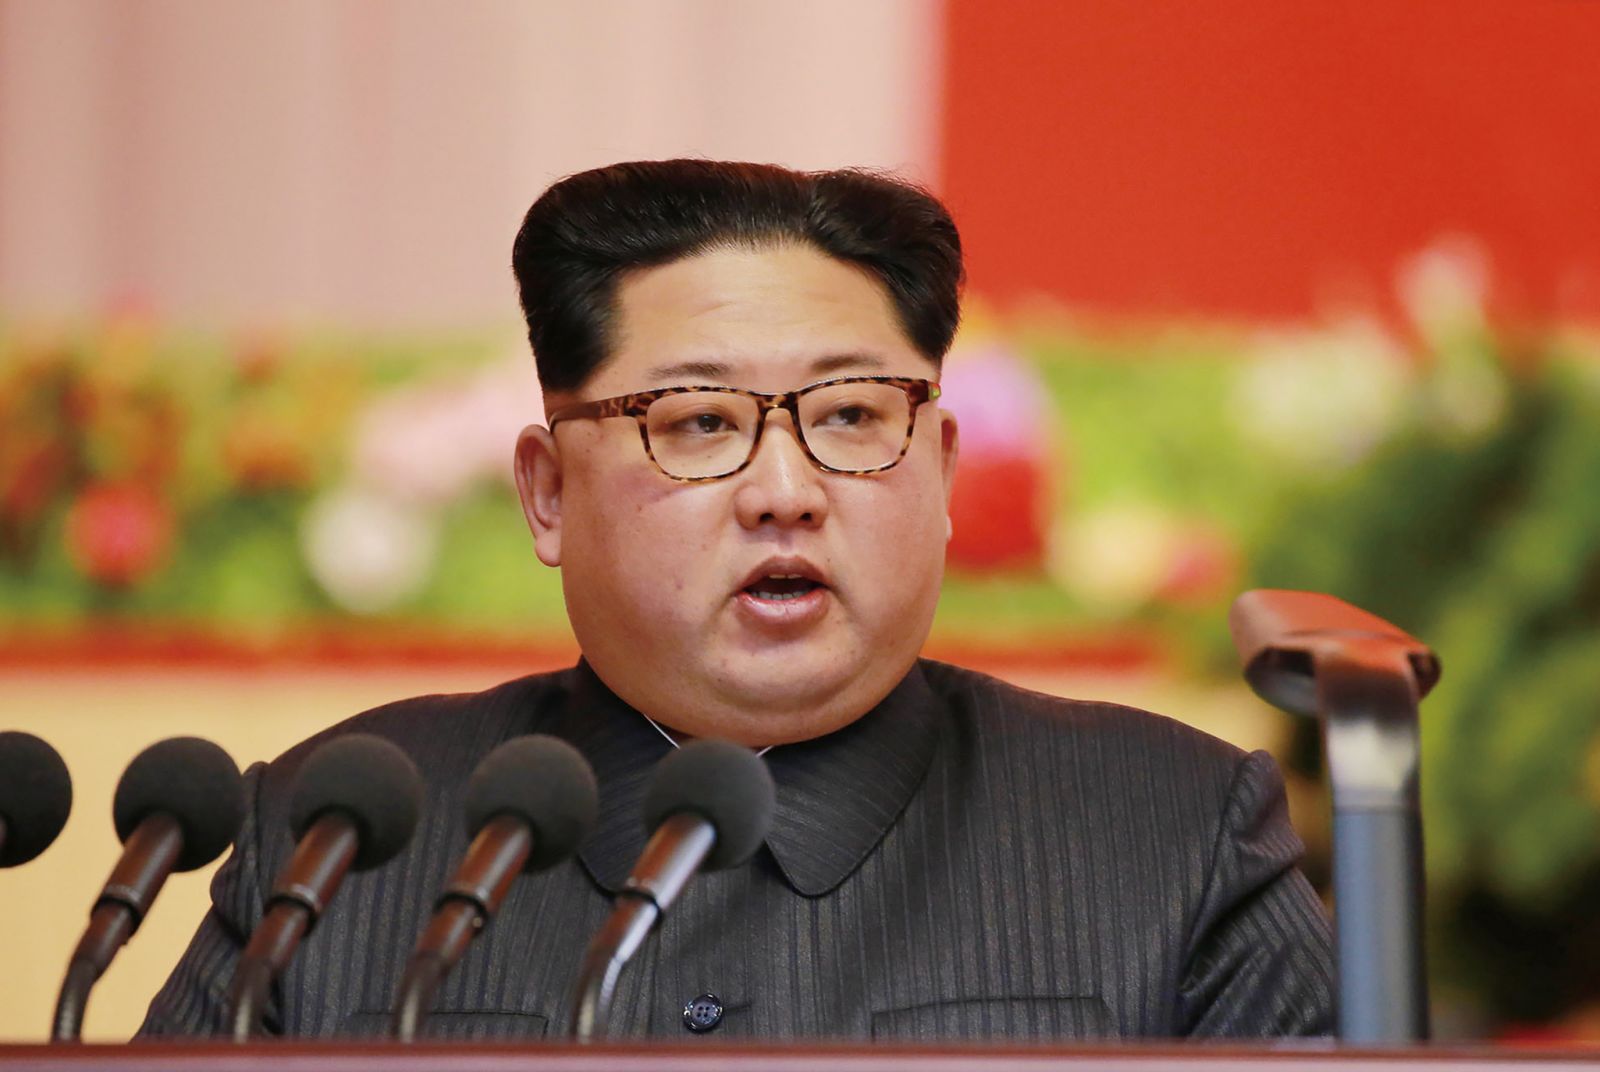 傳朝鮮竊比特幣為核武籌資